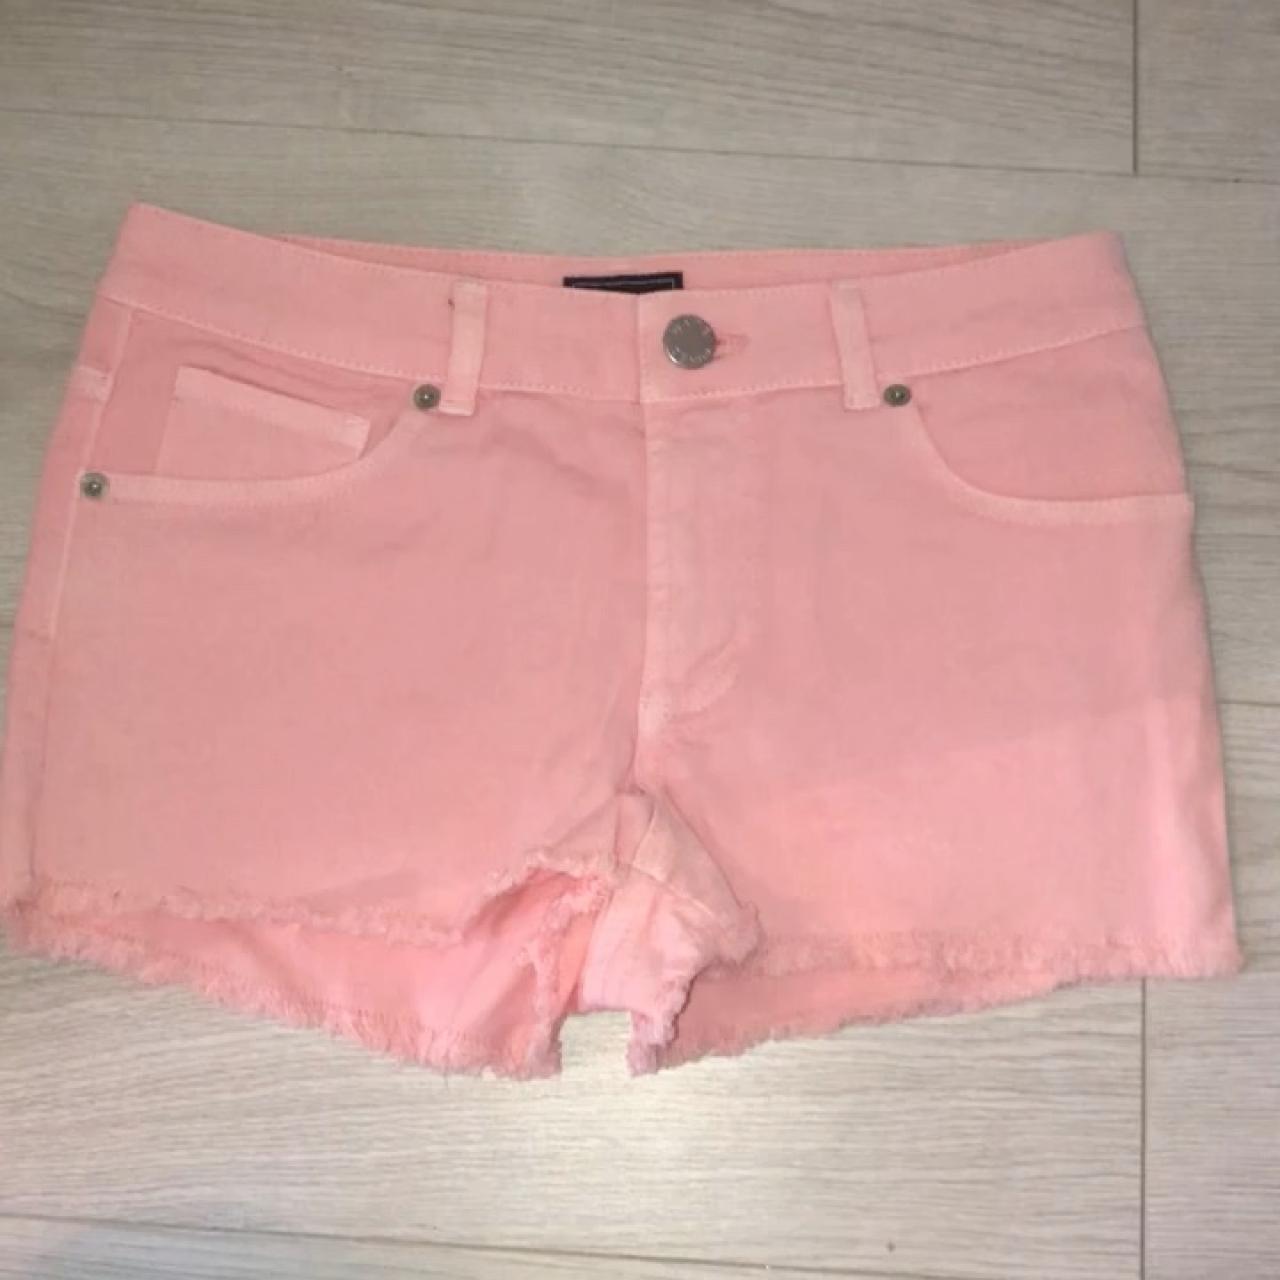 warehouse denim shorts